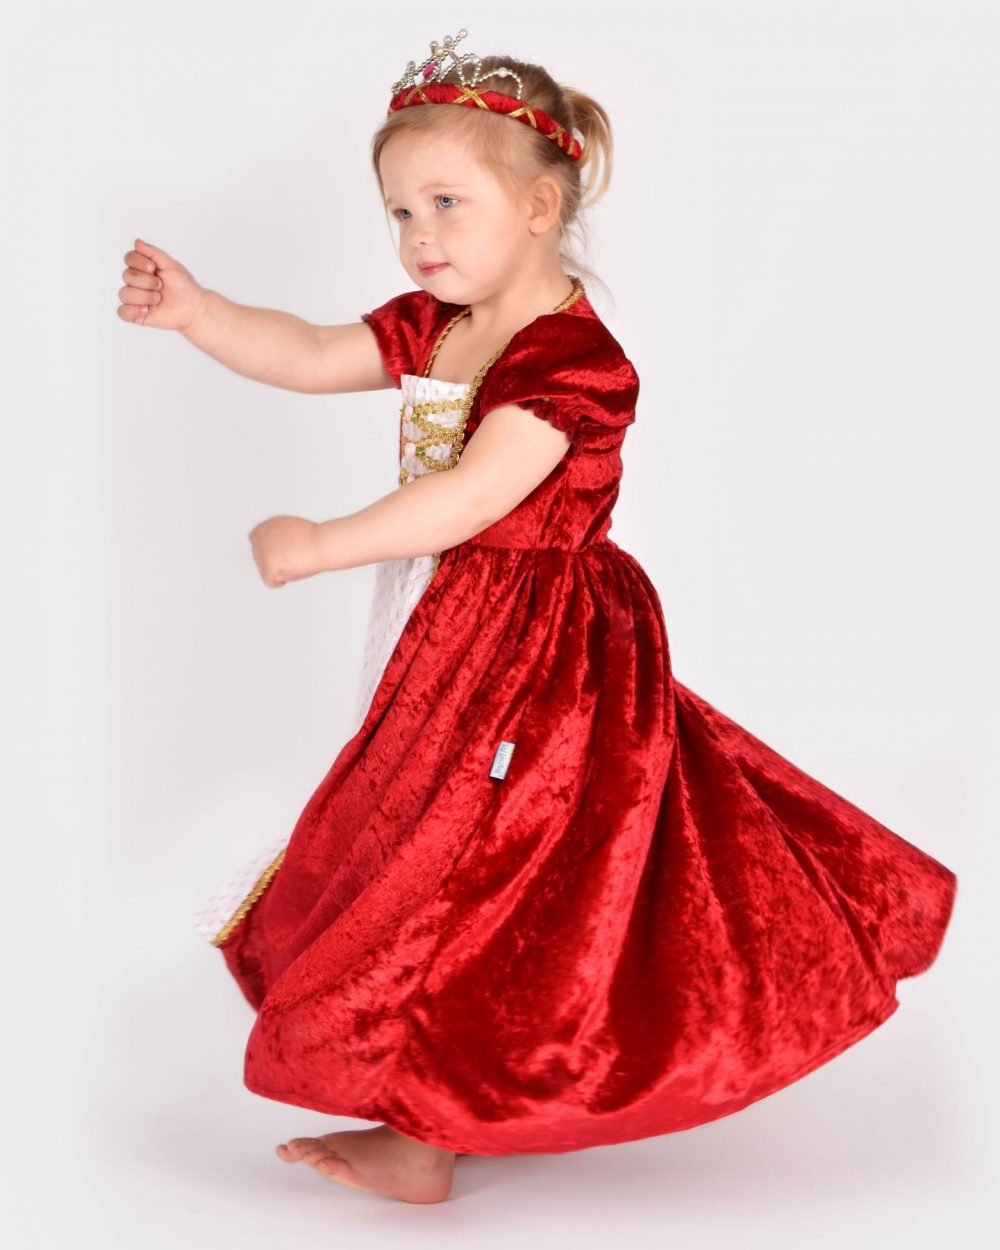 Flicka snurrar runt iklädd en röd prinsessklänning och röd tiara.